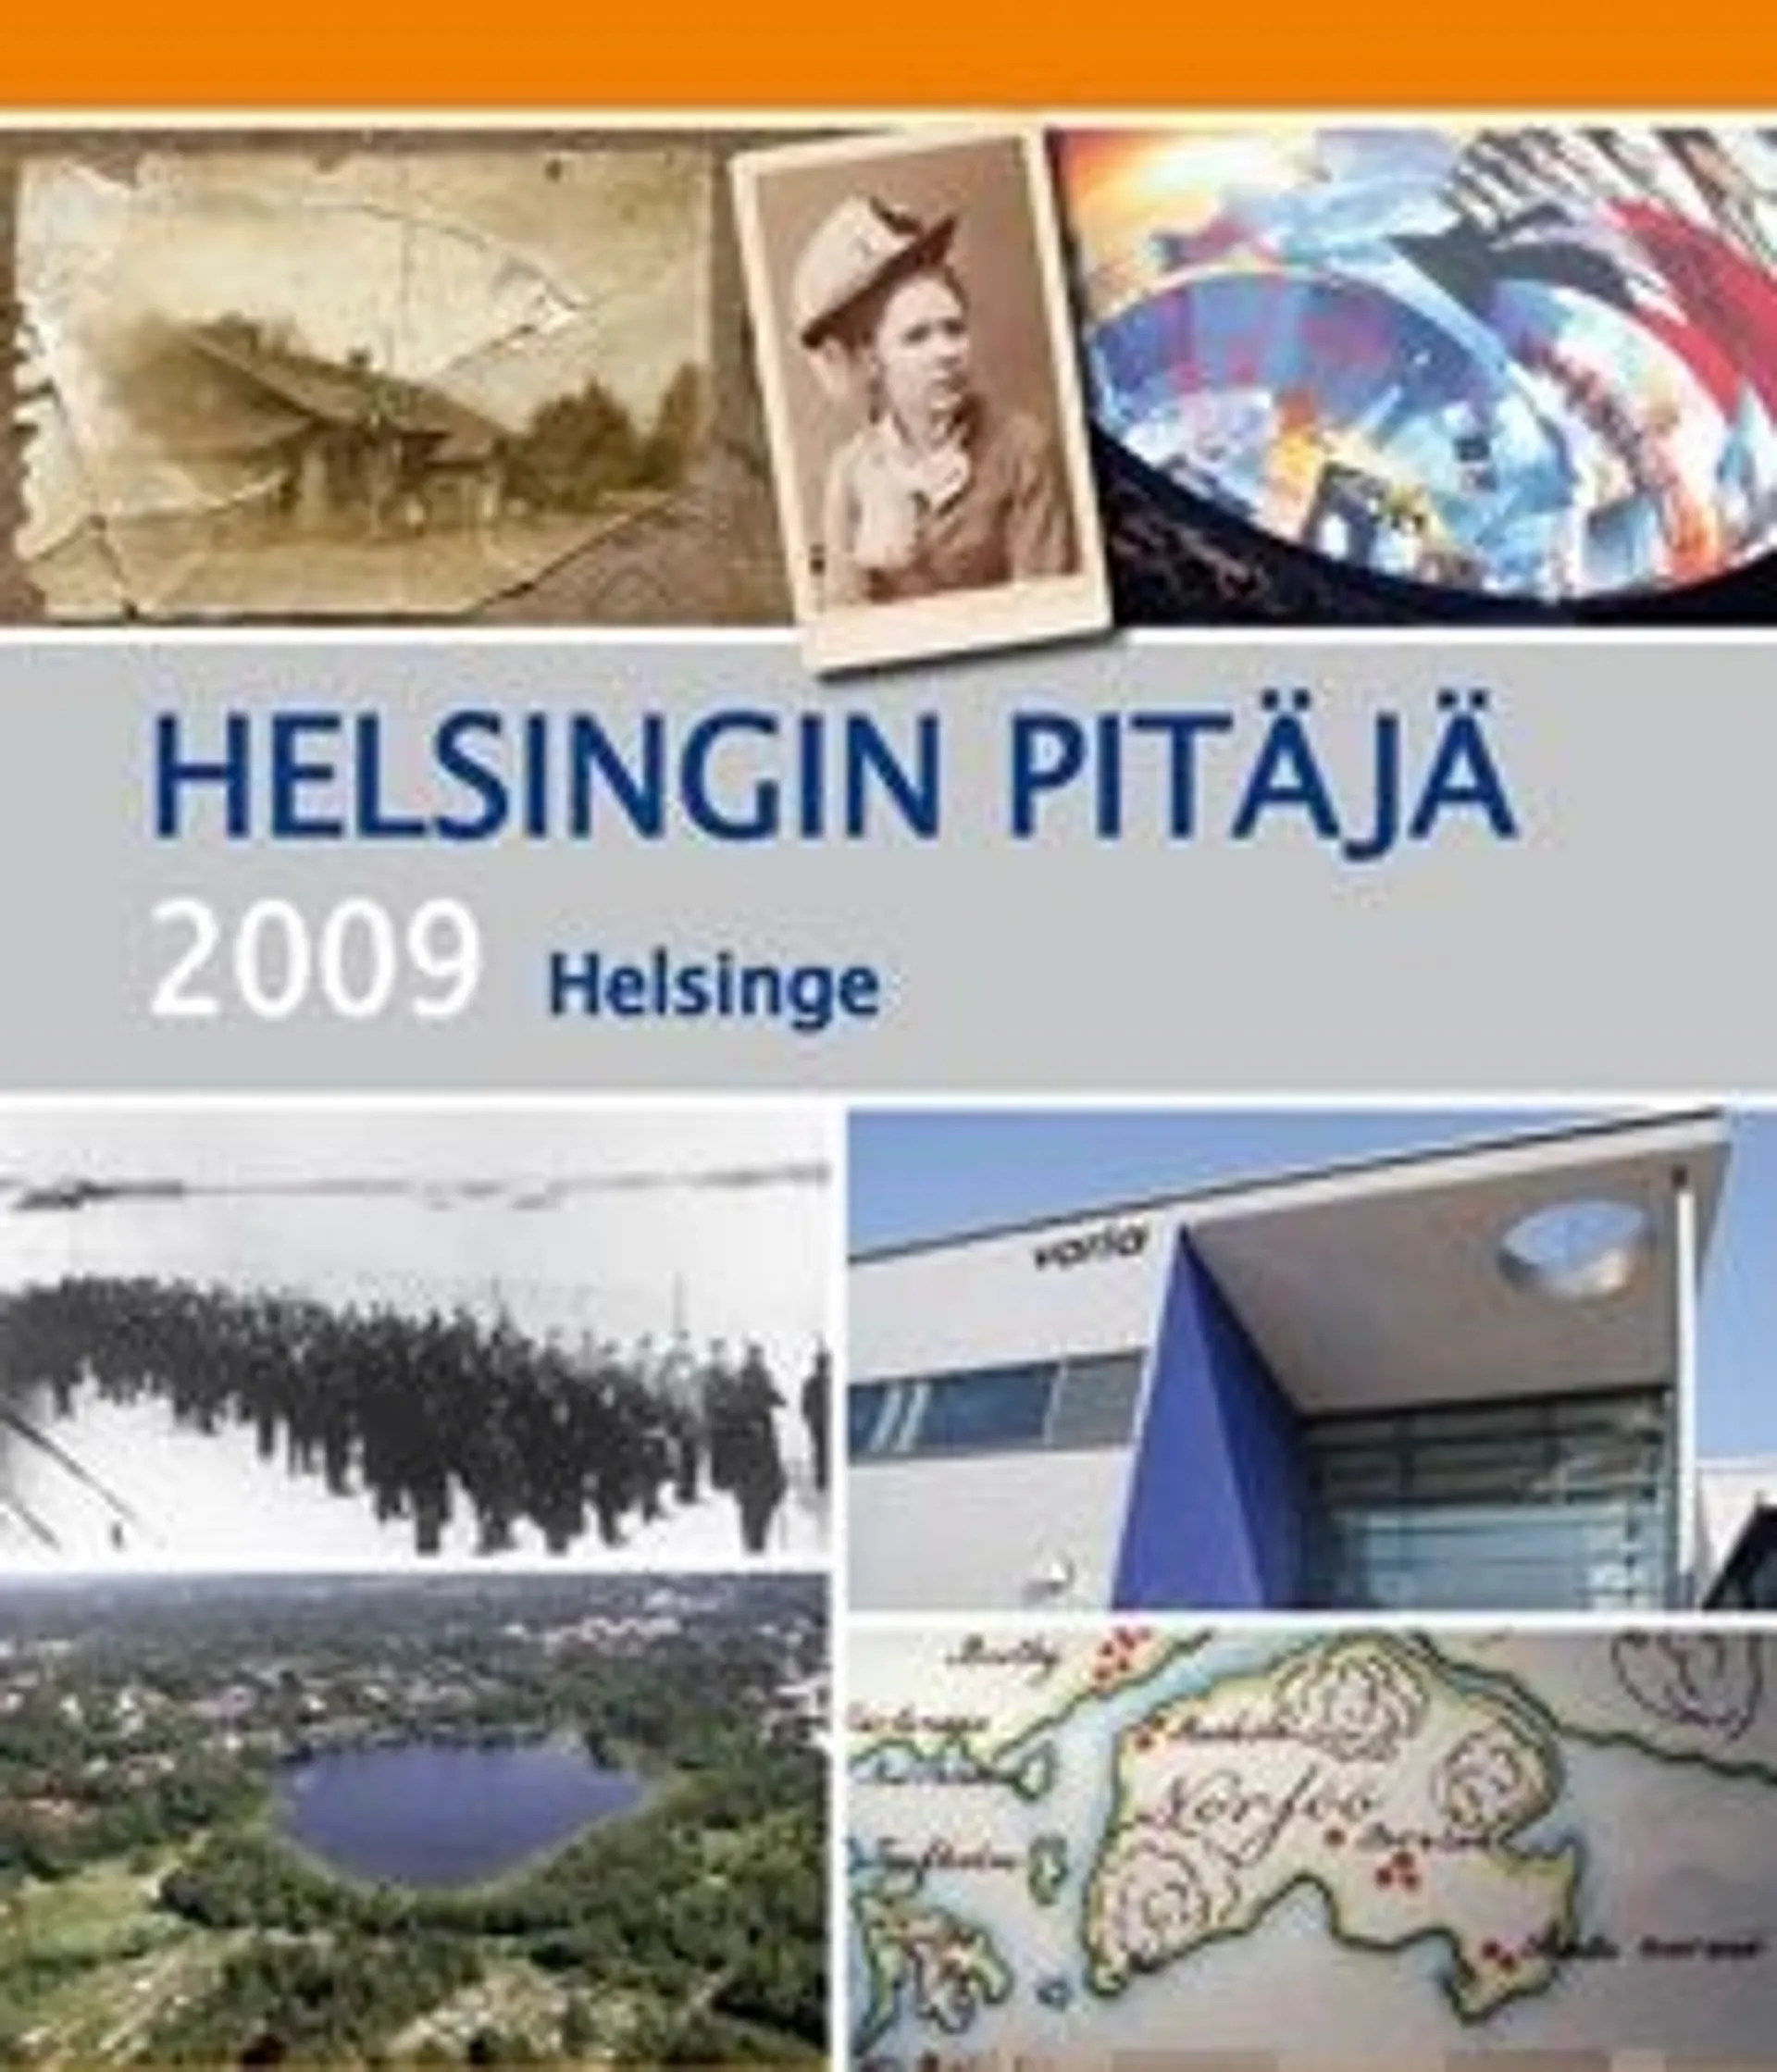 Helsingin pitäjä 2009 Helsinge